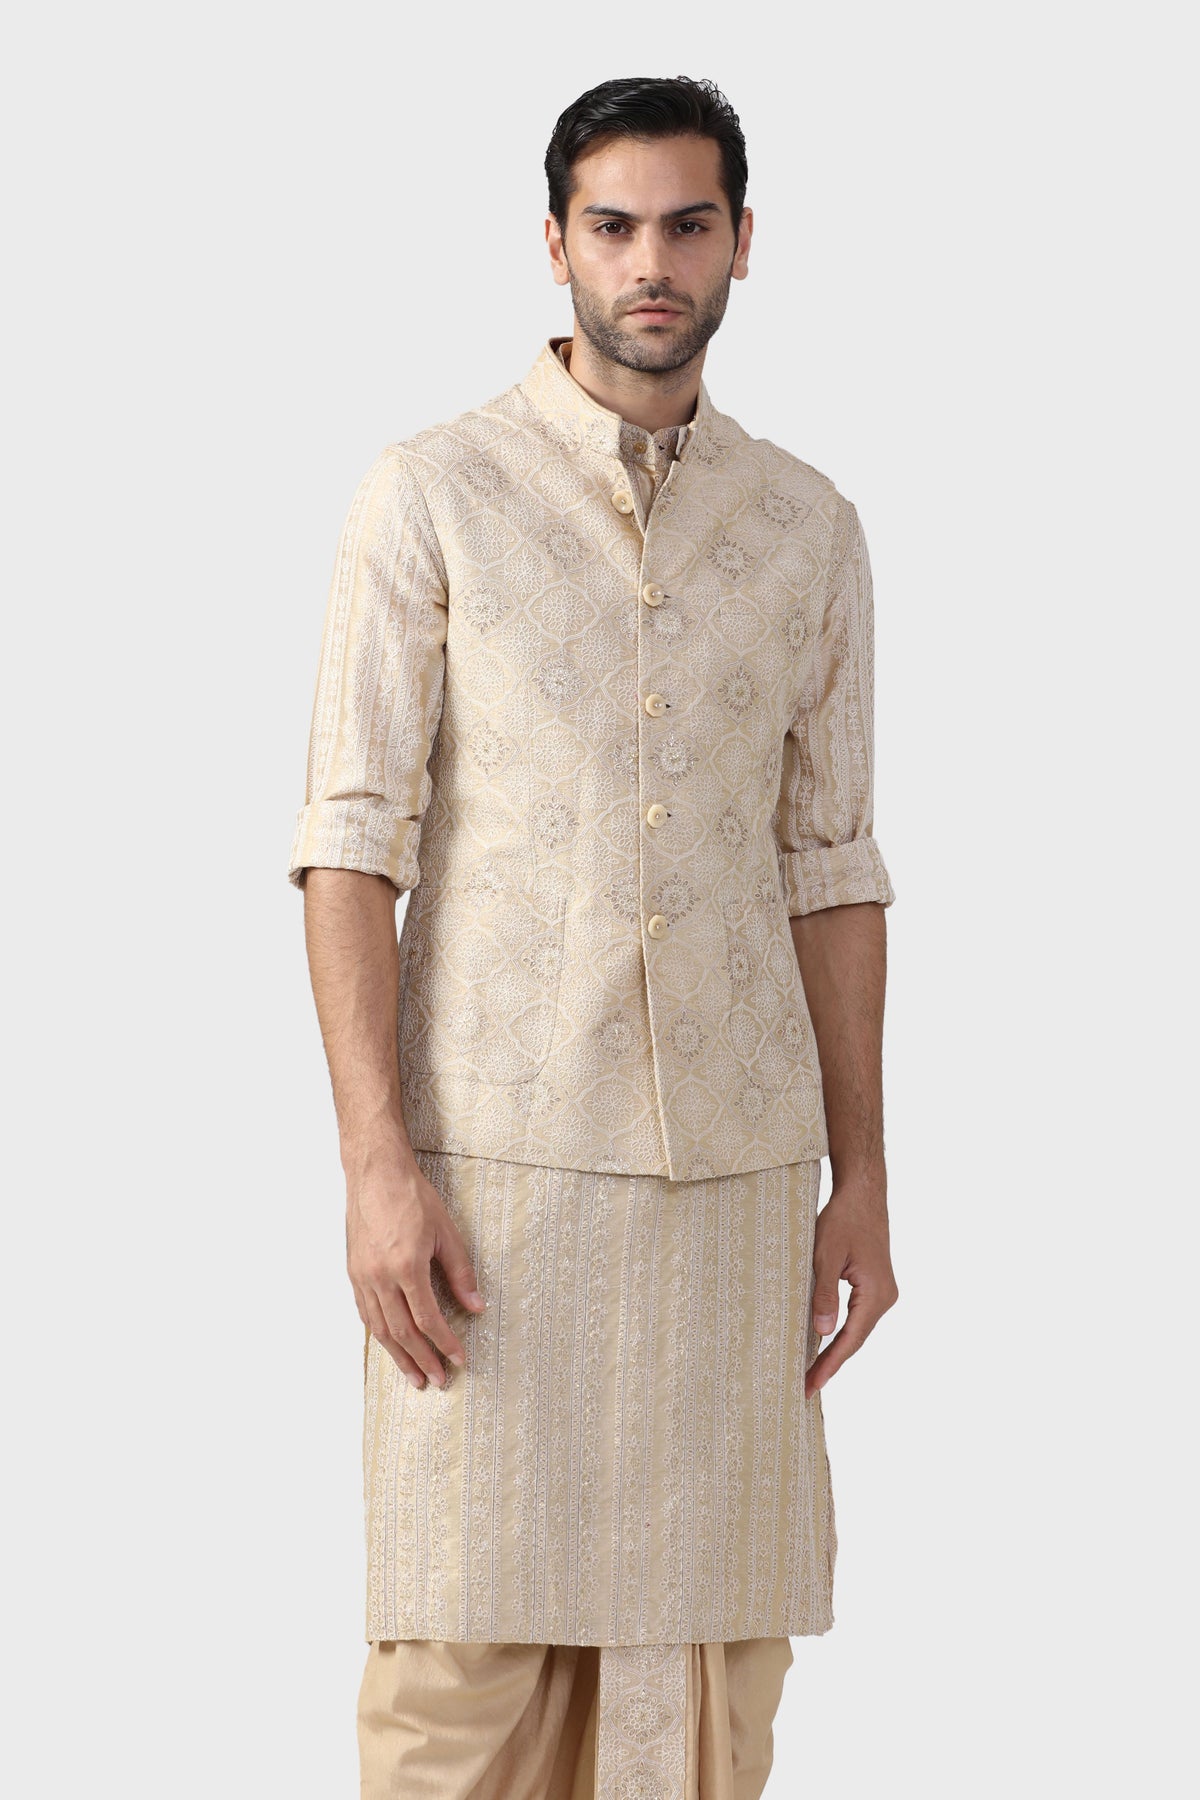 The Decorative Chhatri Waistcoat